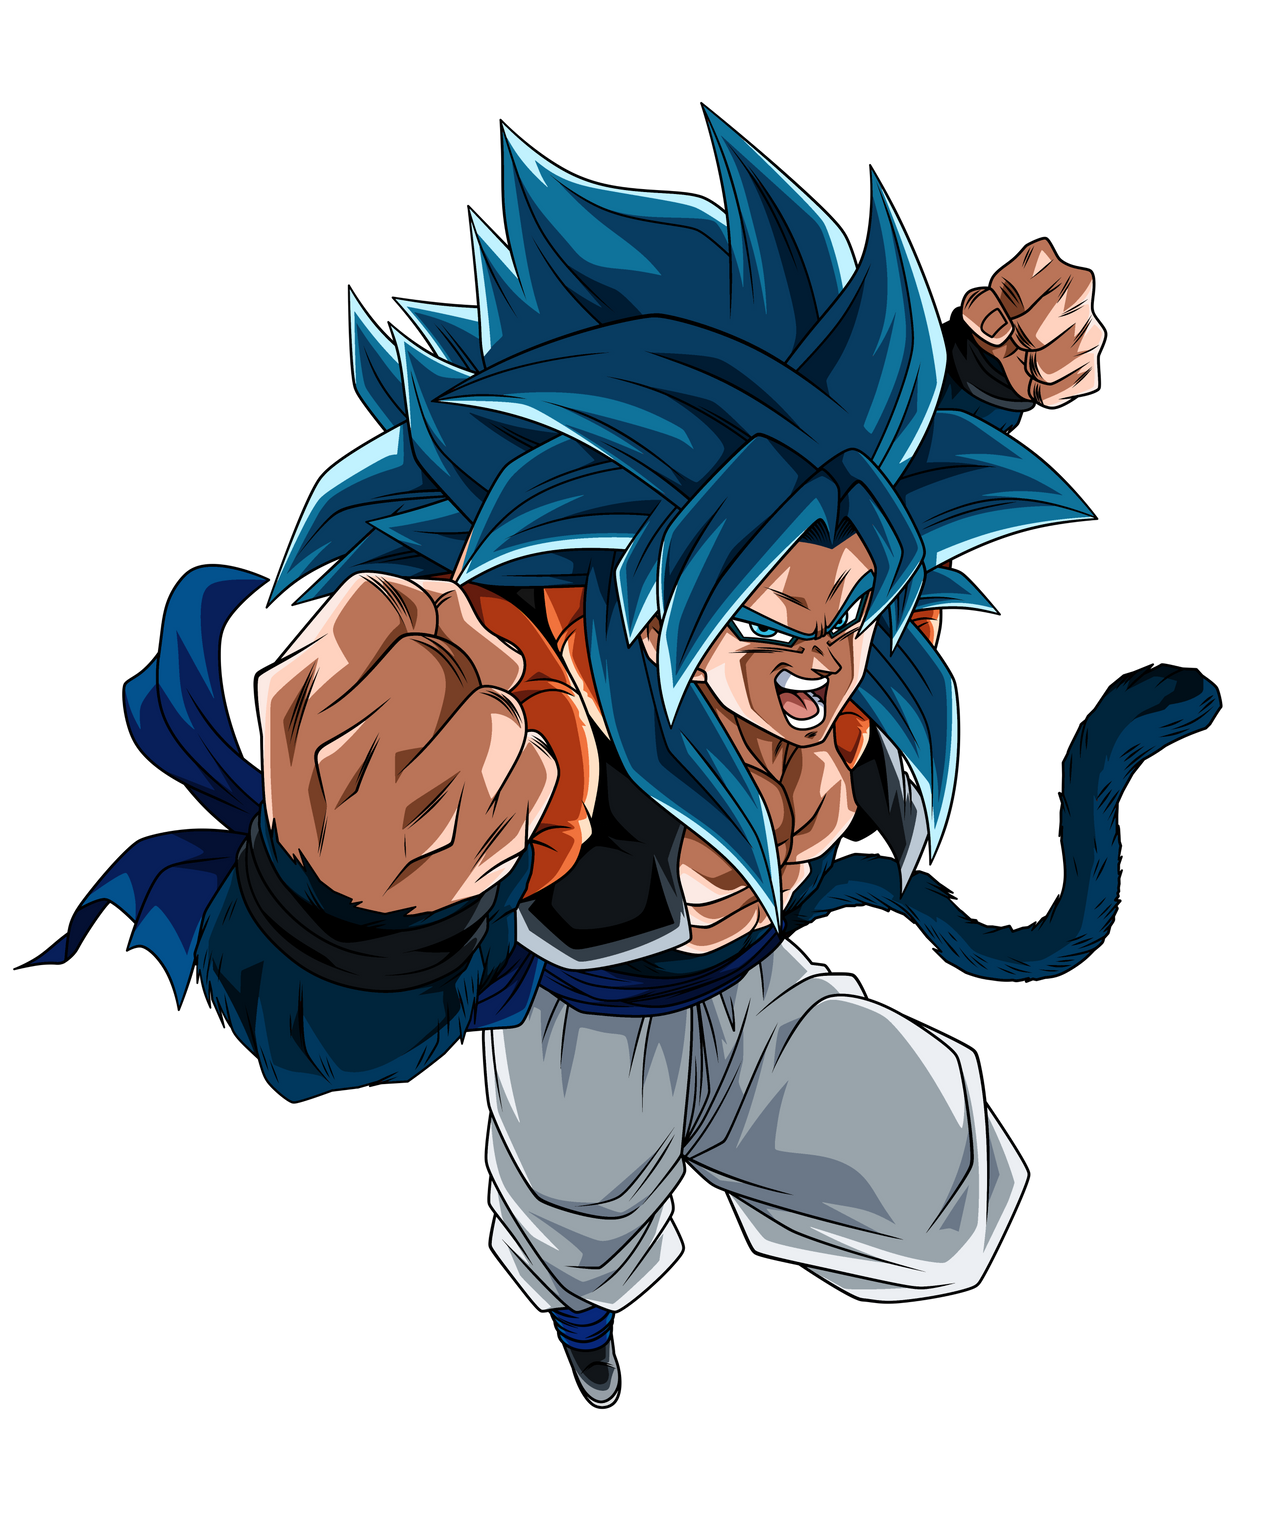 Goku SSJ Blue 3 by Menamezapiero on DeviantArt, goku ssj blue 3 